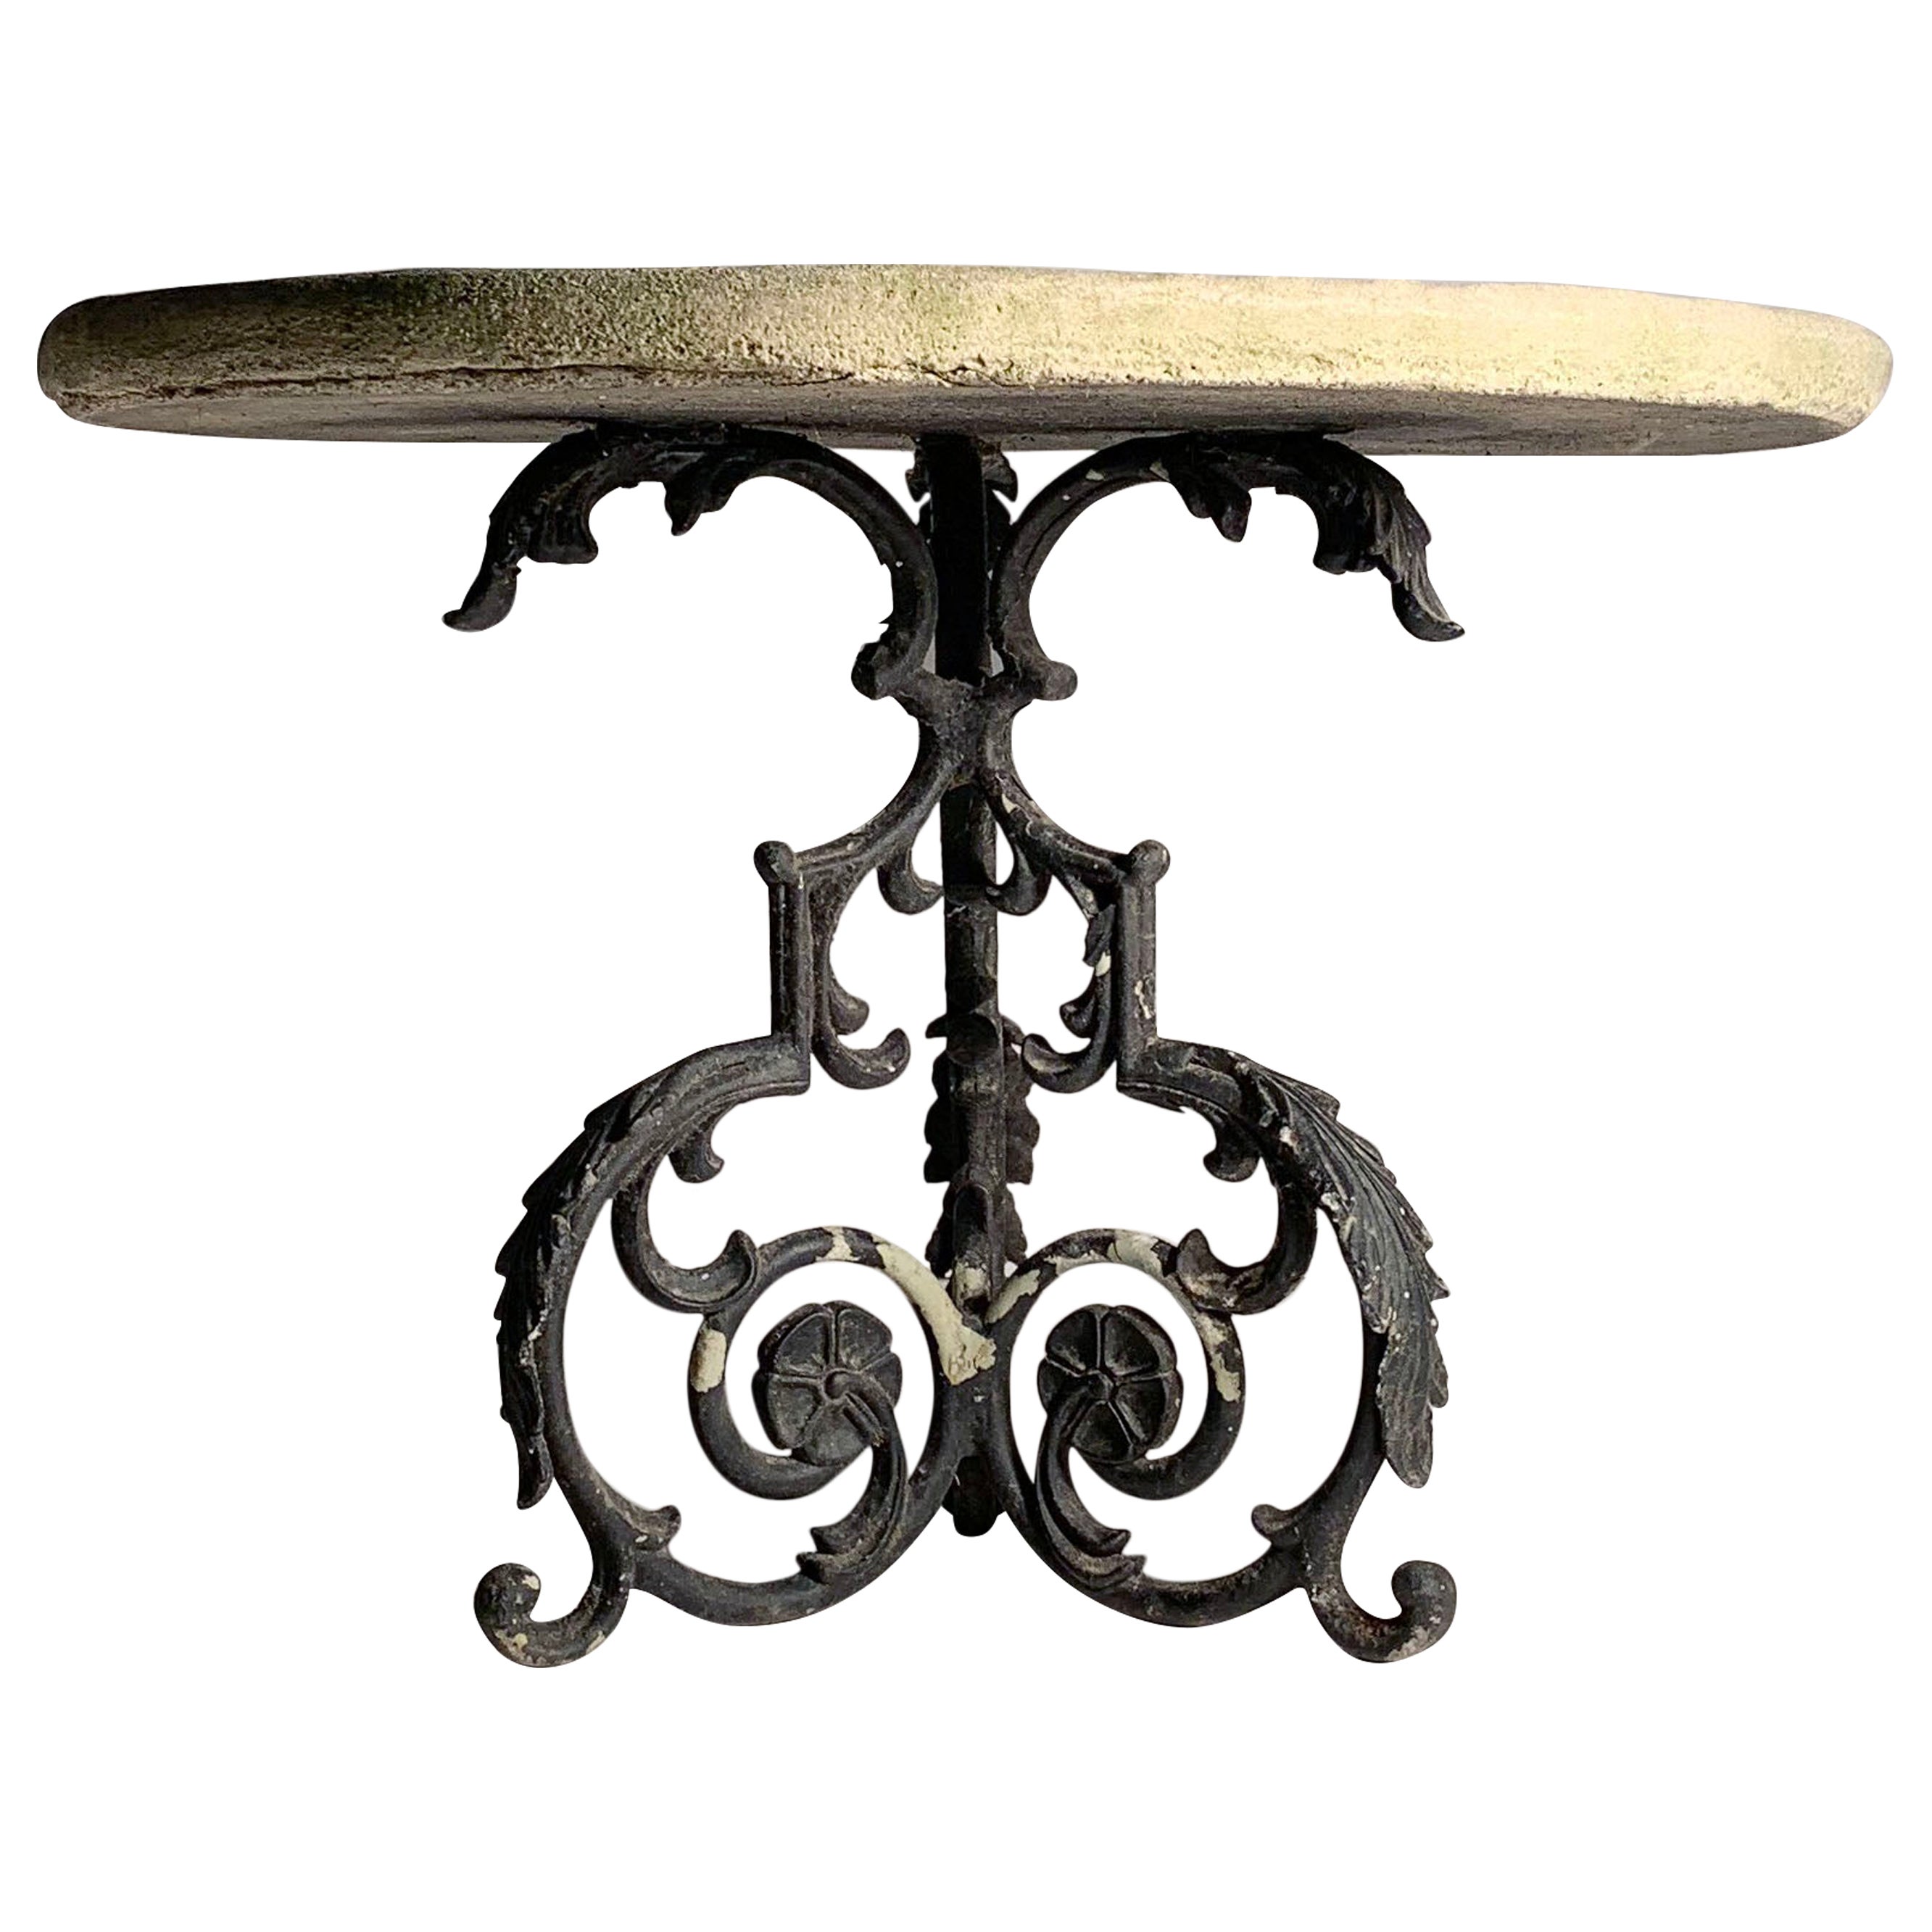 Pequeña mesa de jardín antigua con un elaborado tablero de piedra fundida